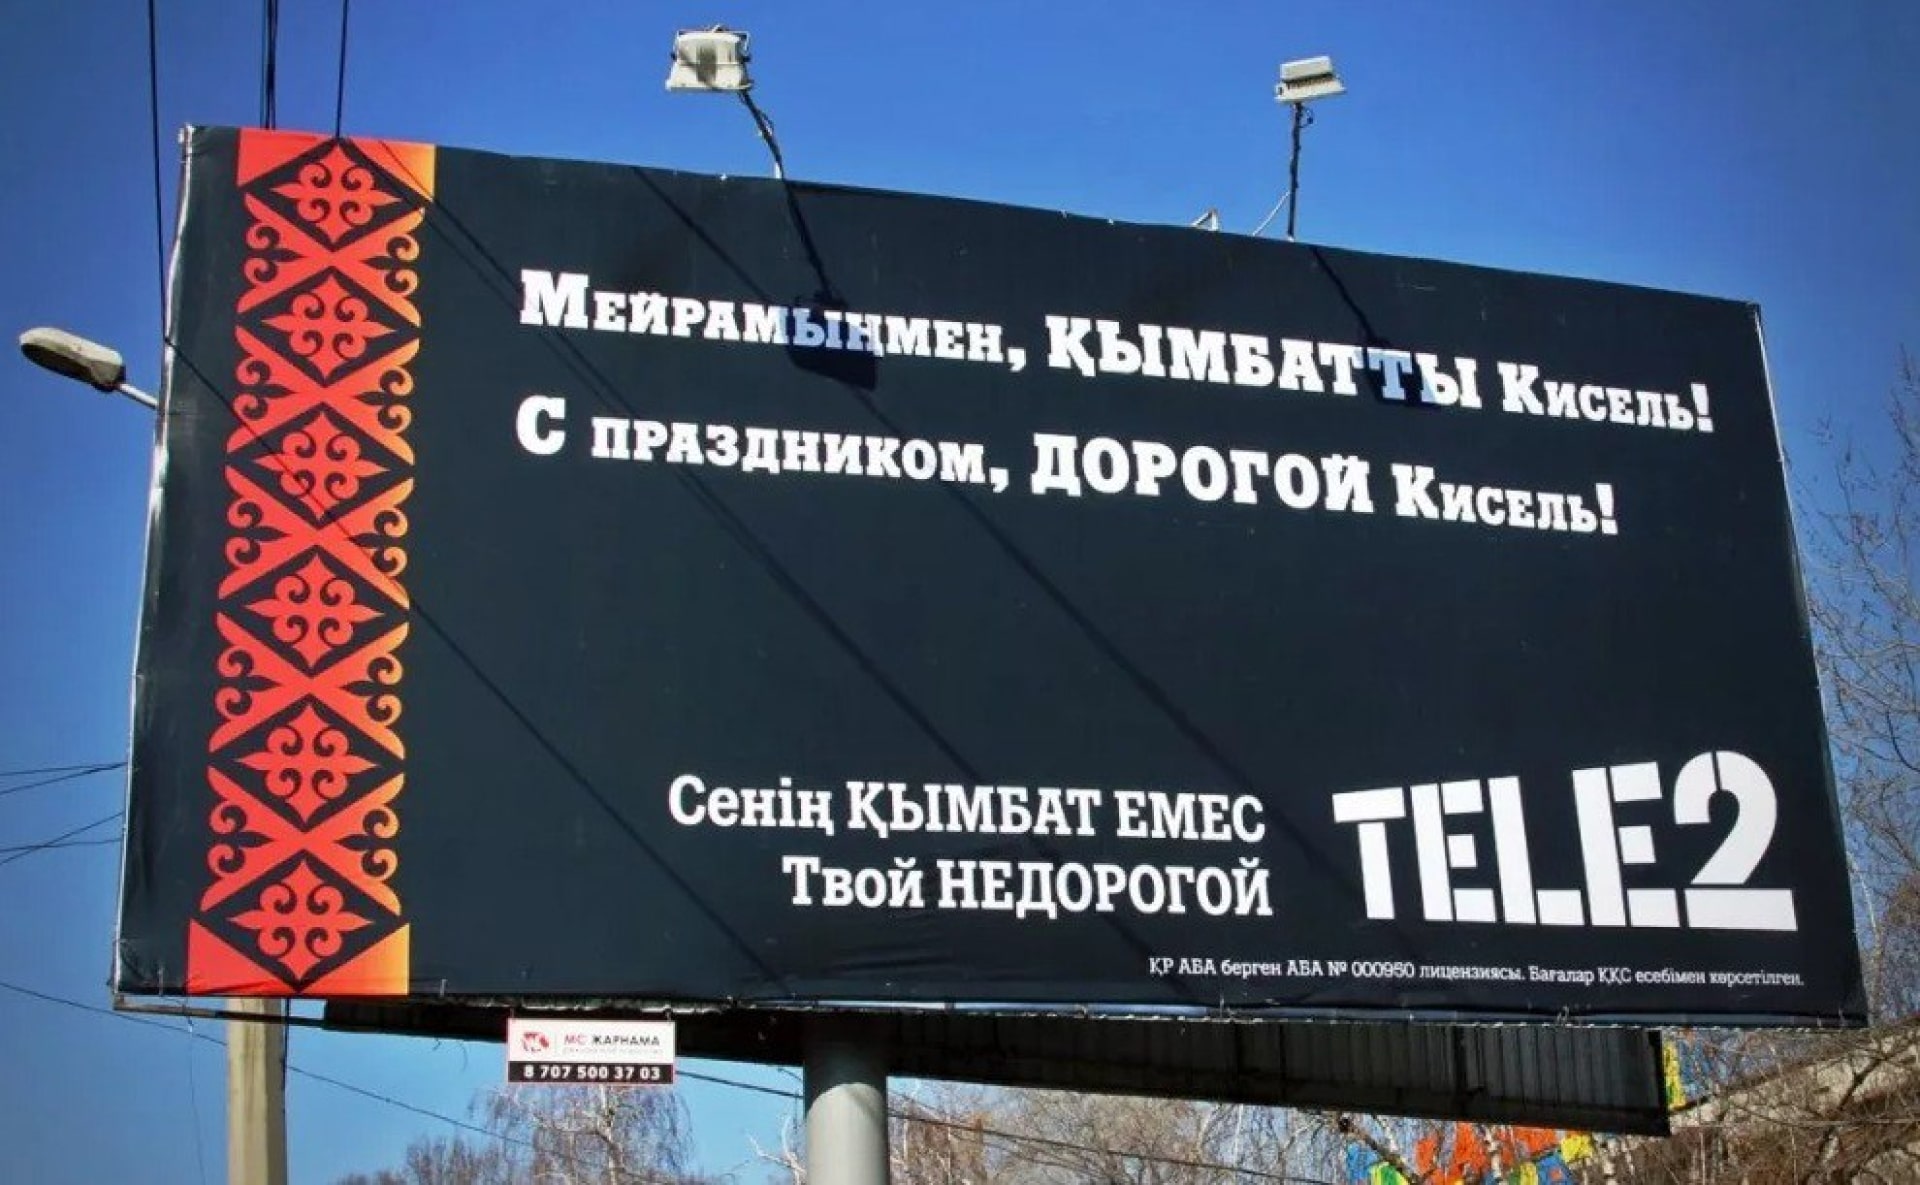 Наружная реклама TELE2